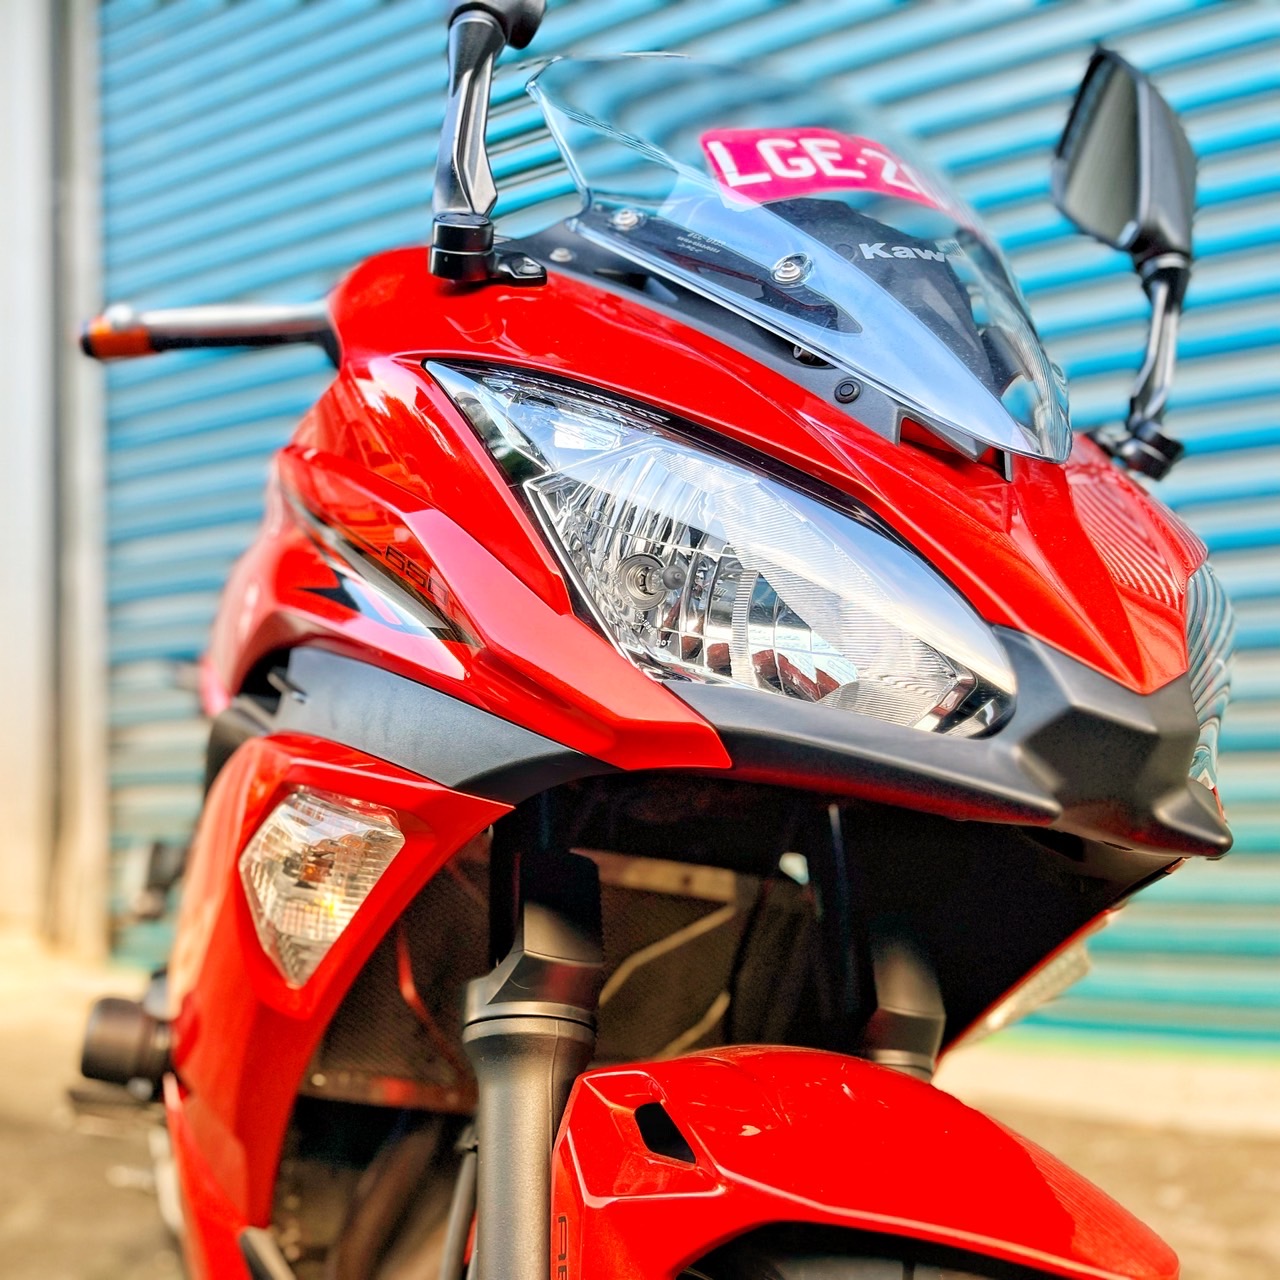 【小資族二手重機買賣】KAWASAKI NINJA650 - 「Webike-摩托車市」 無摔無事故 里程保證 小資族二手重機買賣